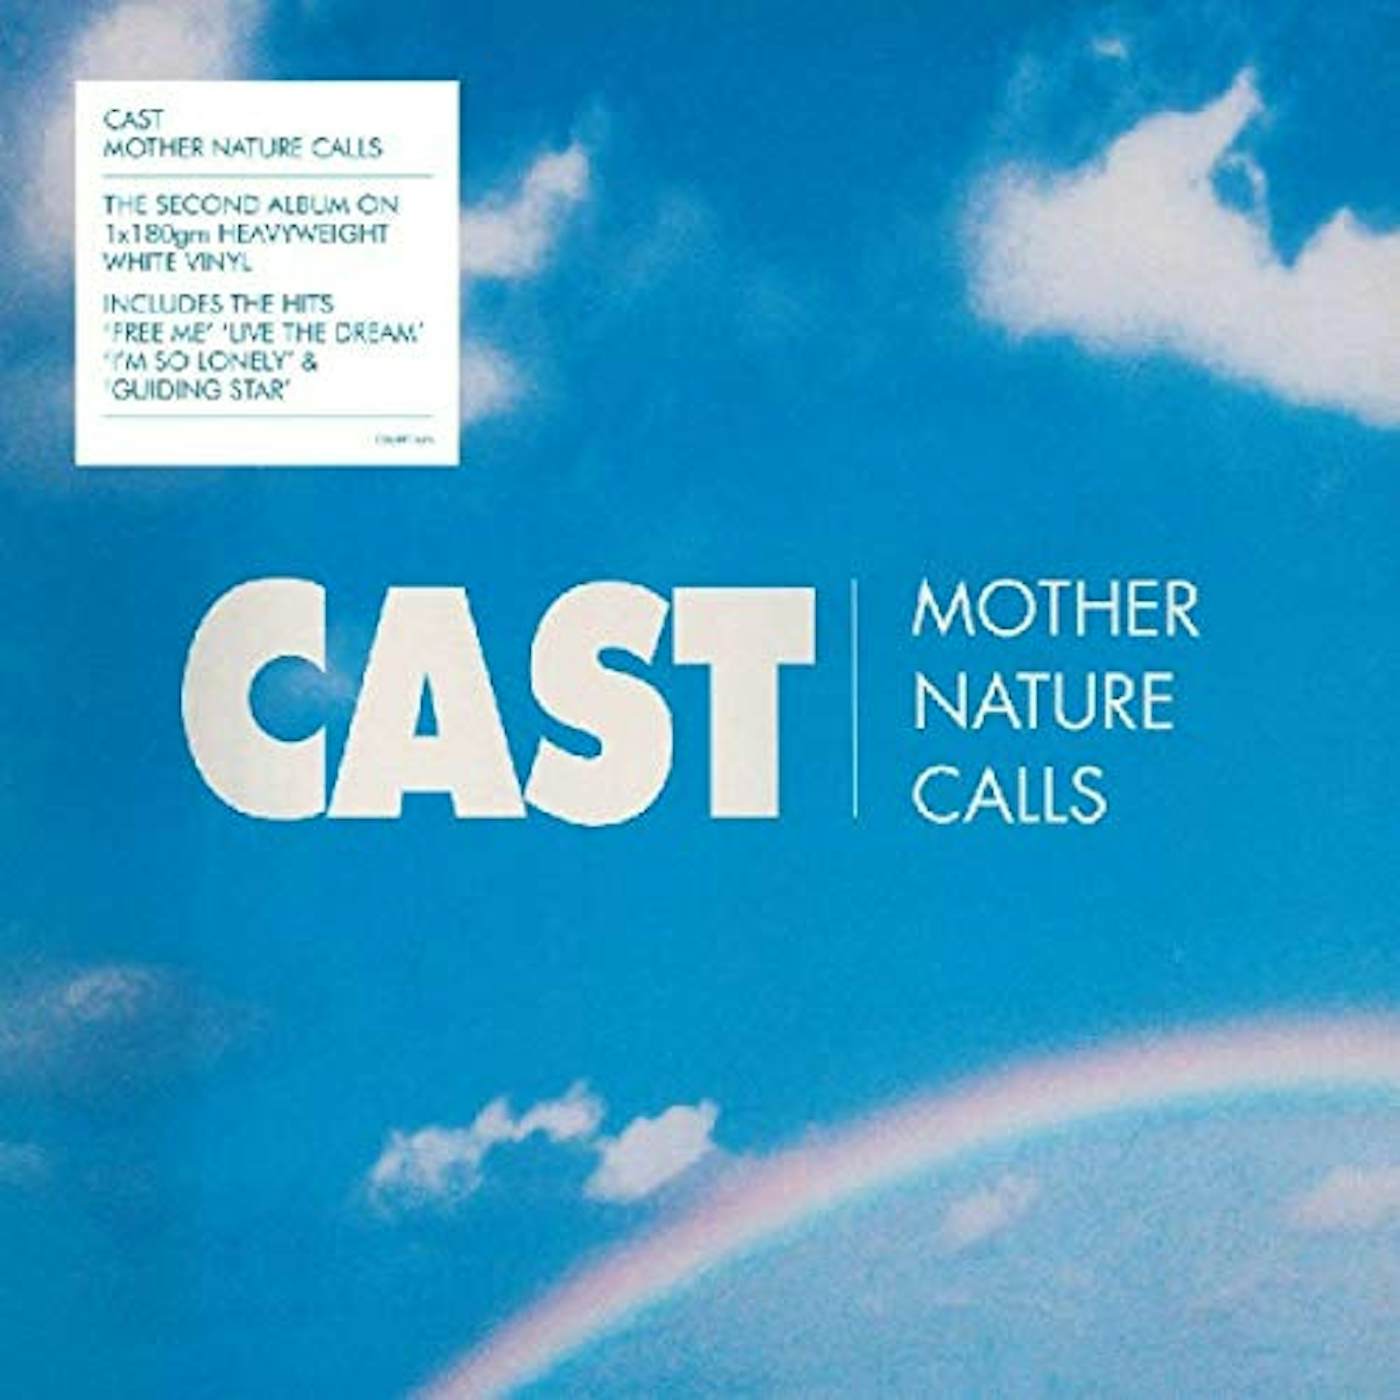 Cast Mother Nature Calls Vinyl Record